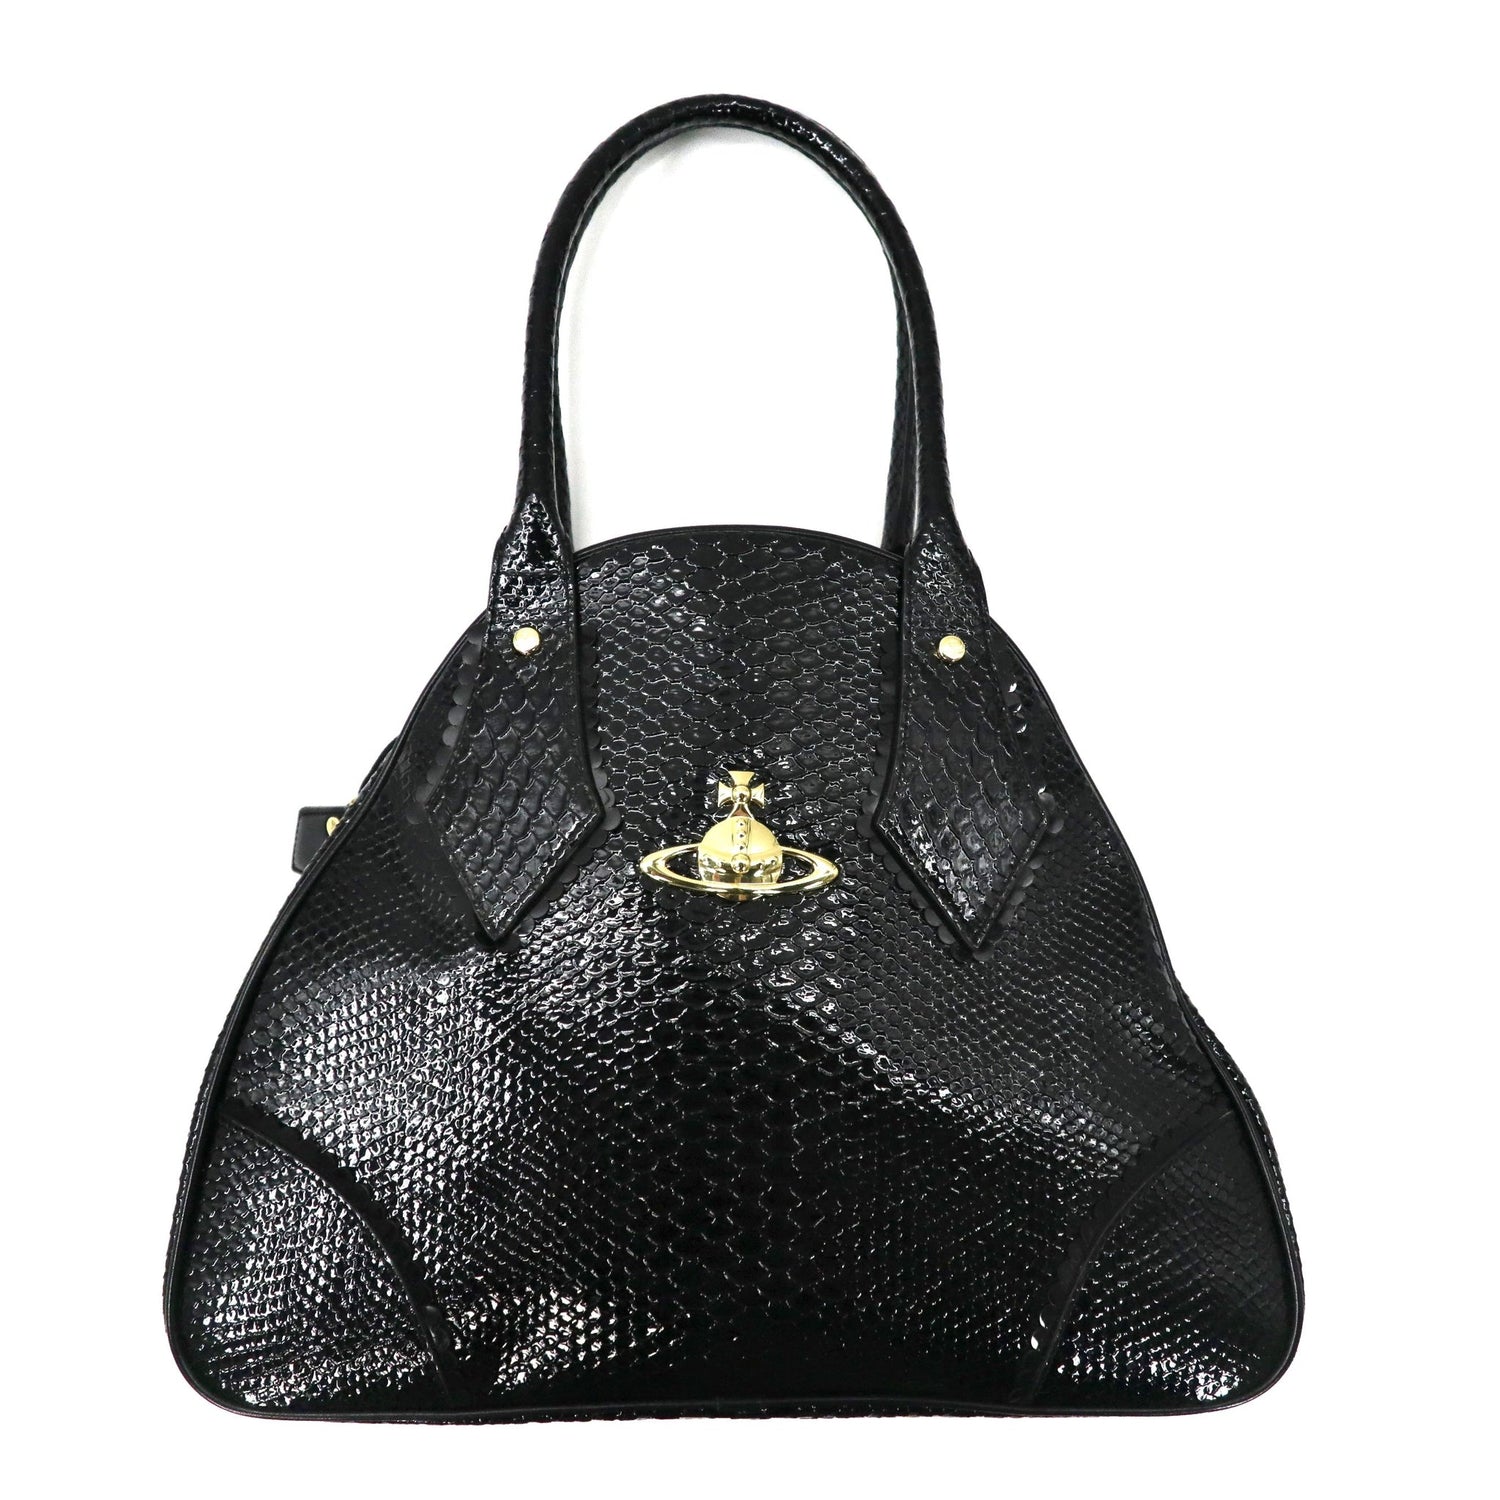 VIVIENNE WESTWOOD Handbag Black Leather Frilly Snake 12-02-951014